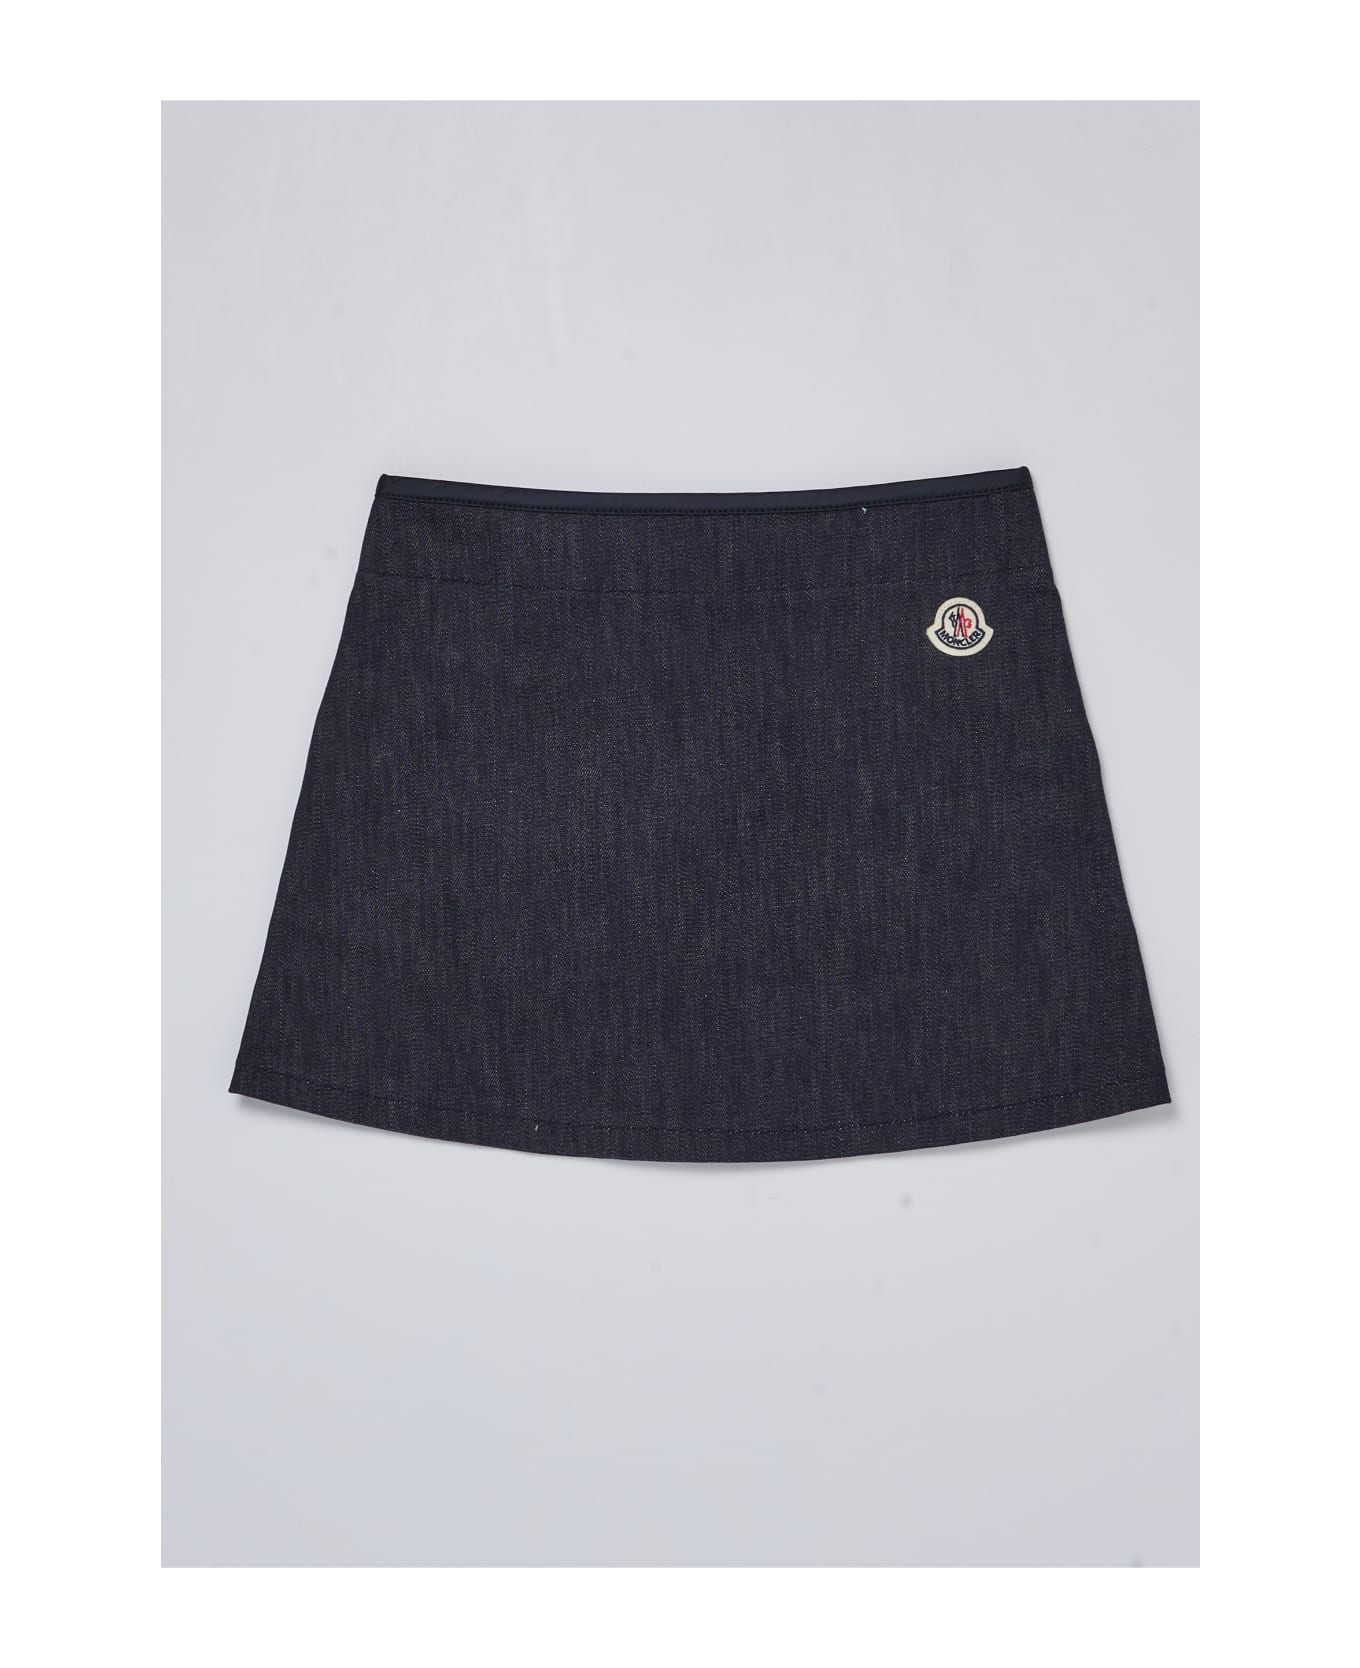 Moncler Skirt Skirt - DENIM SCURO ボトムス